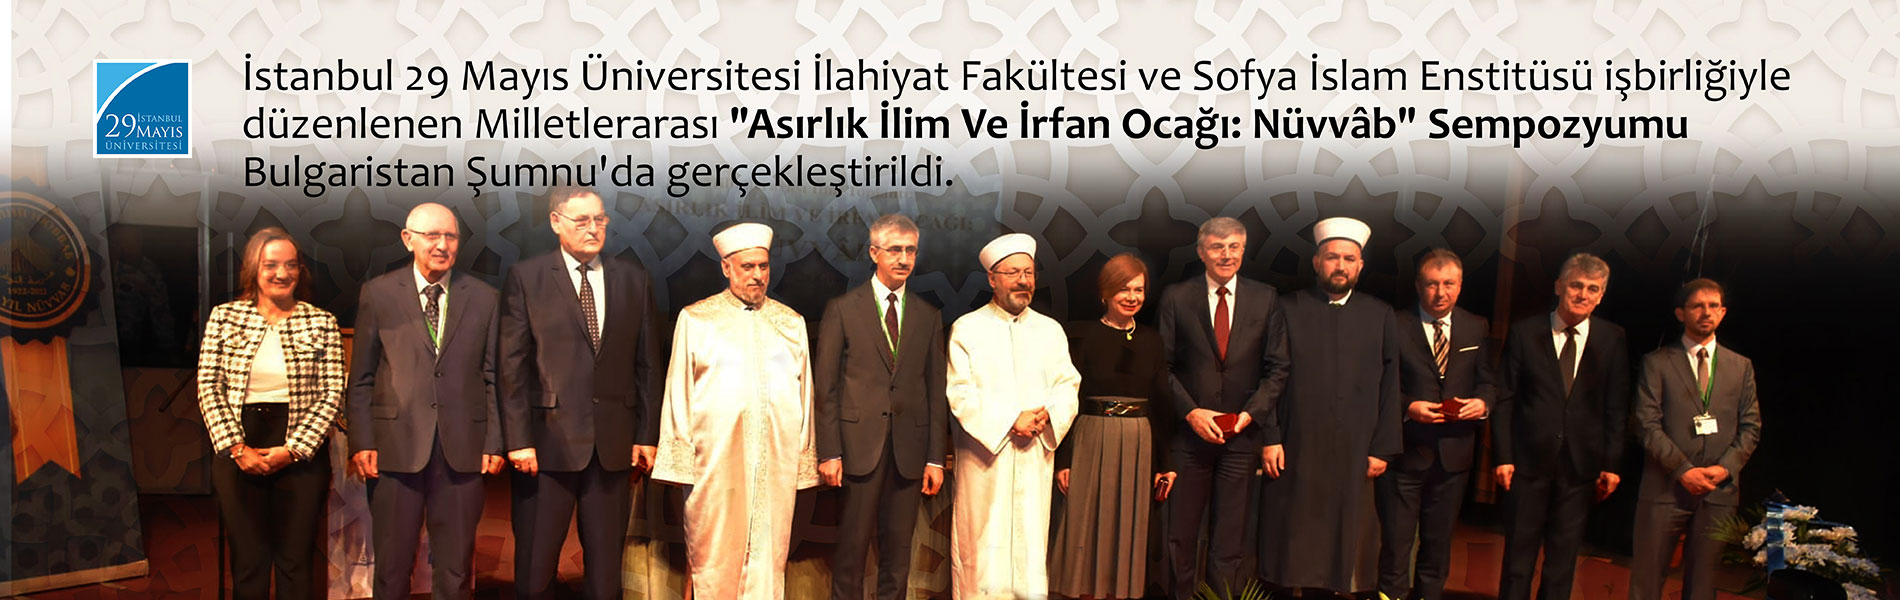 İstanbul 29 Mayıs Üniversitesi İlahiyat Fakültesi ve Sofya Yüksek İslam Enstitüsü işbirliğiyle düzenlenen Milletlerarası "Asırlık İlim Ve İrfan Ocağı: Nüvvâb" Sempozyumu Bulgaristan’ın Şumnu kentinde  27 Kasım 2022 tarihinde gerçekleştirildi.